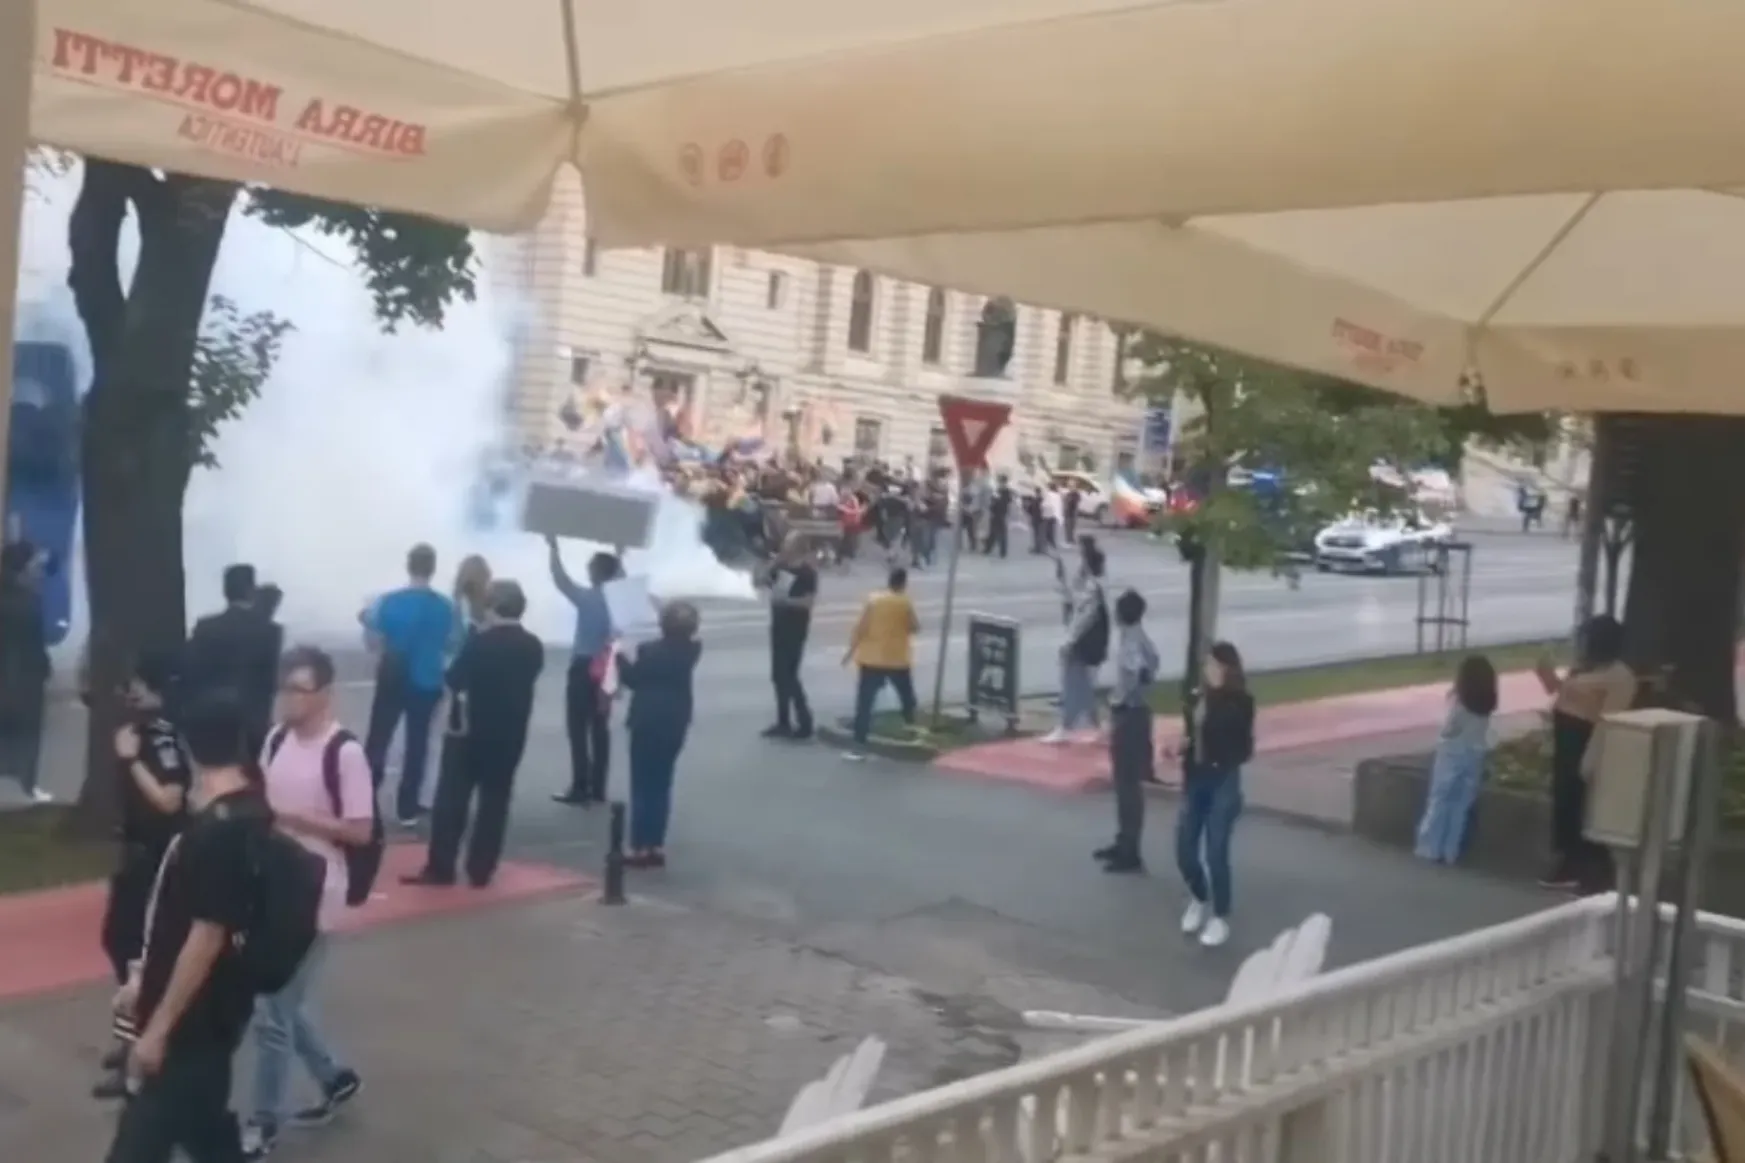 Tojással és füstbombával támadtak az ellentüntetők a Iaşi Pride résztvevőire